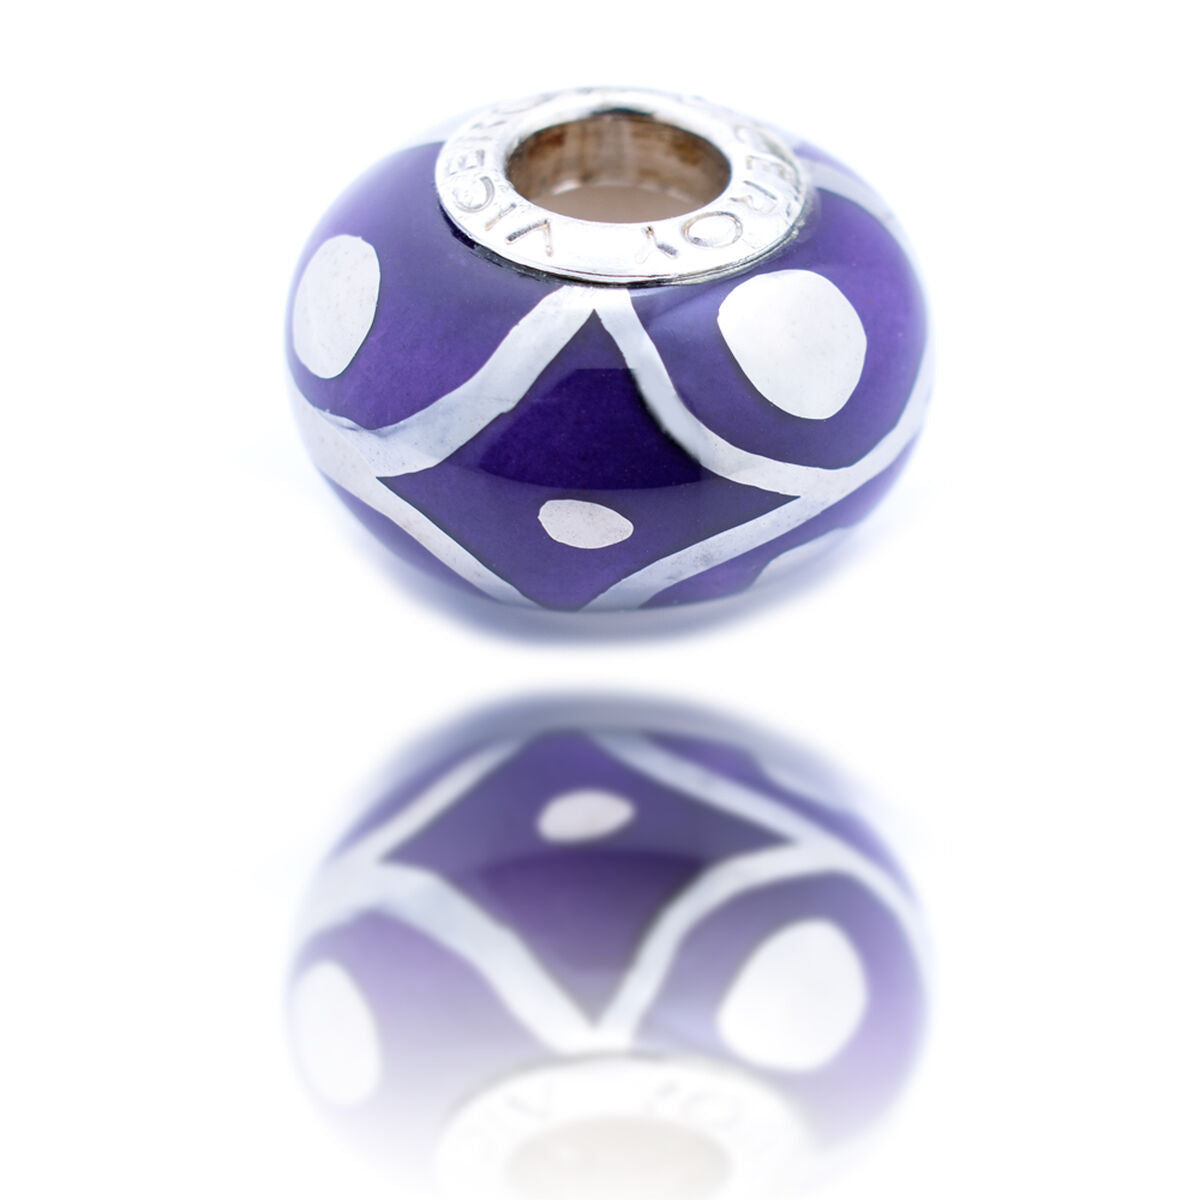 Ladies' Beads Viceroy VMM0280-17 Purple 1 cm